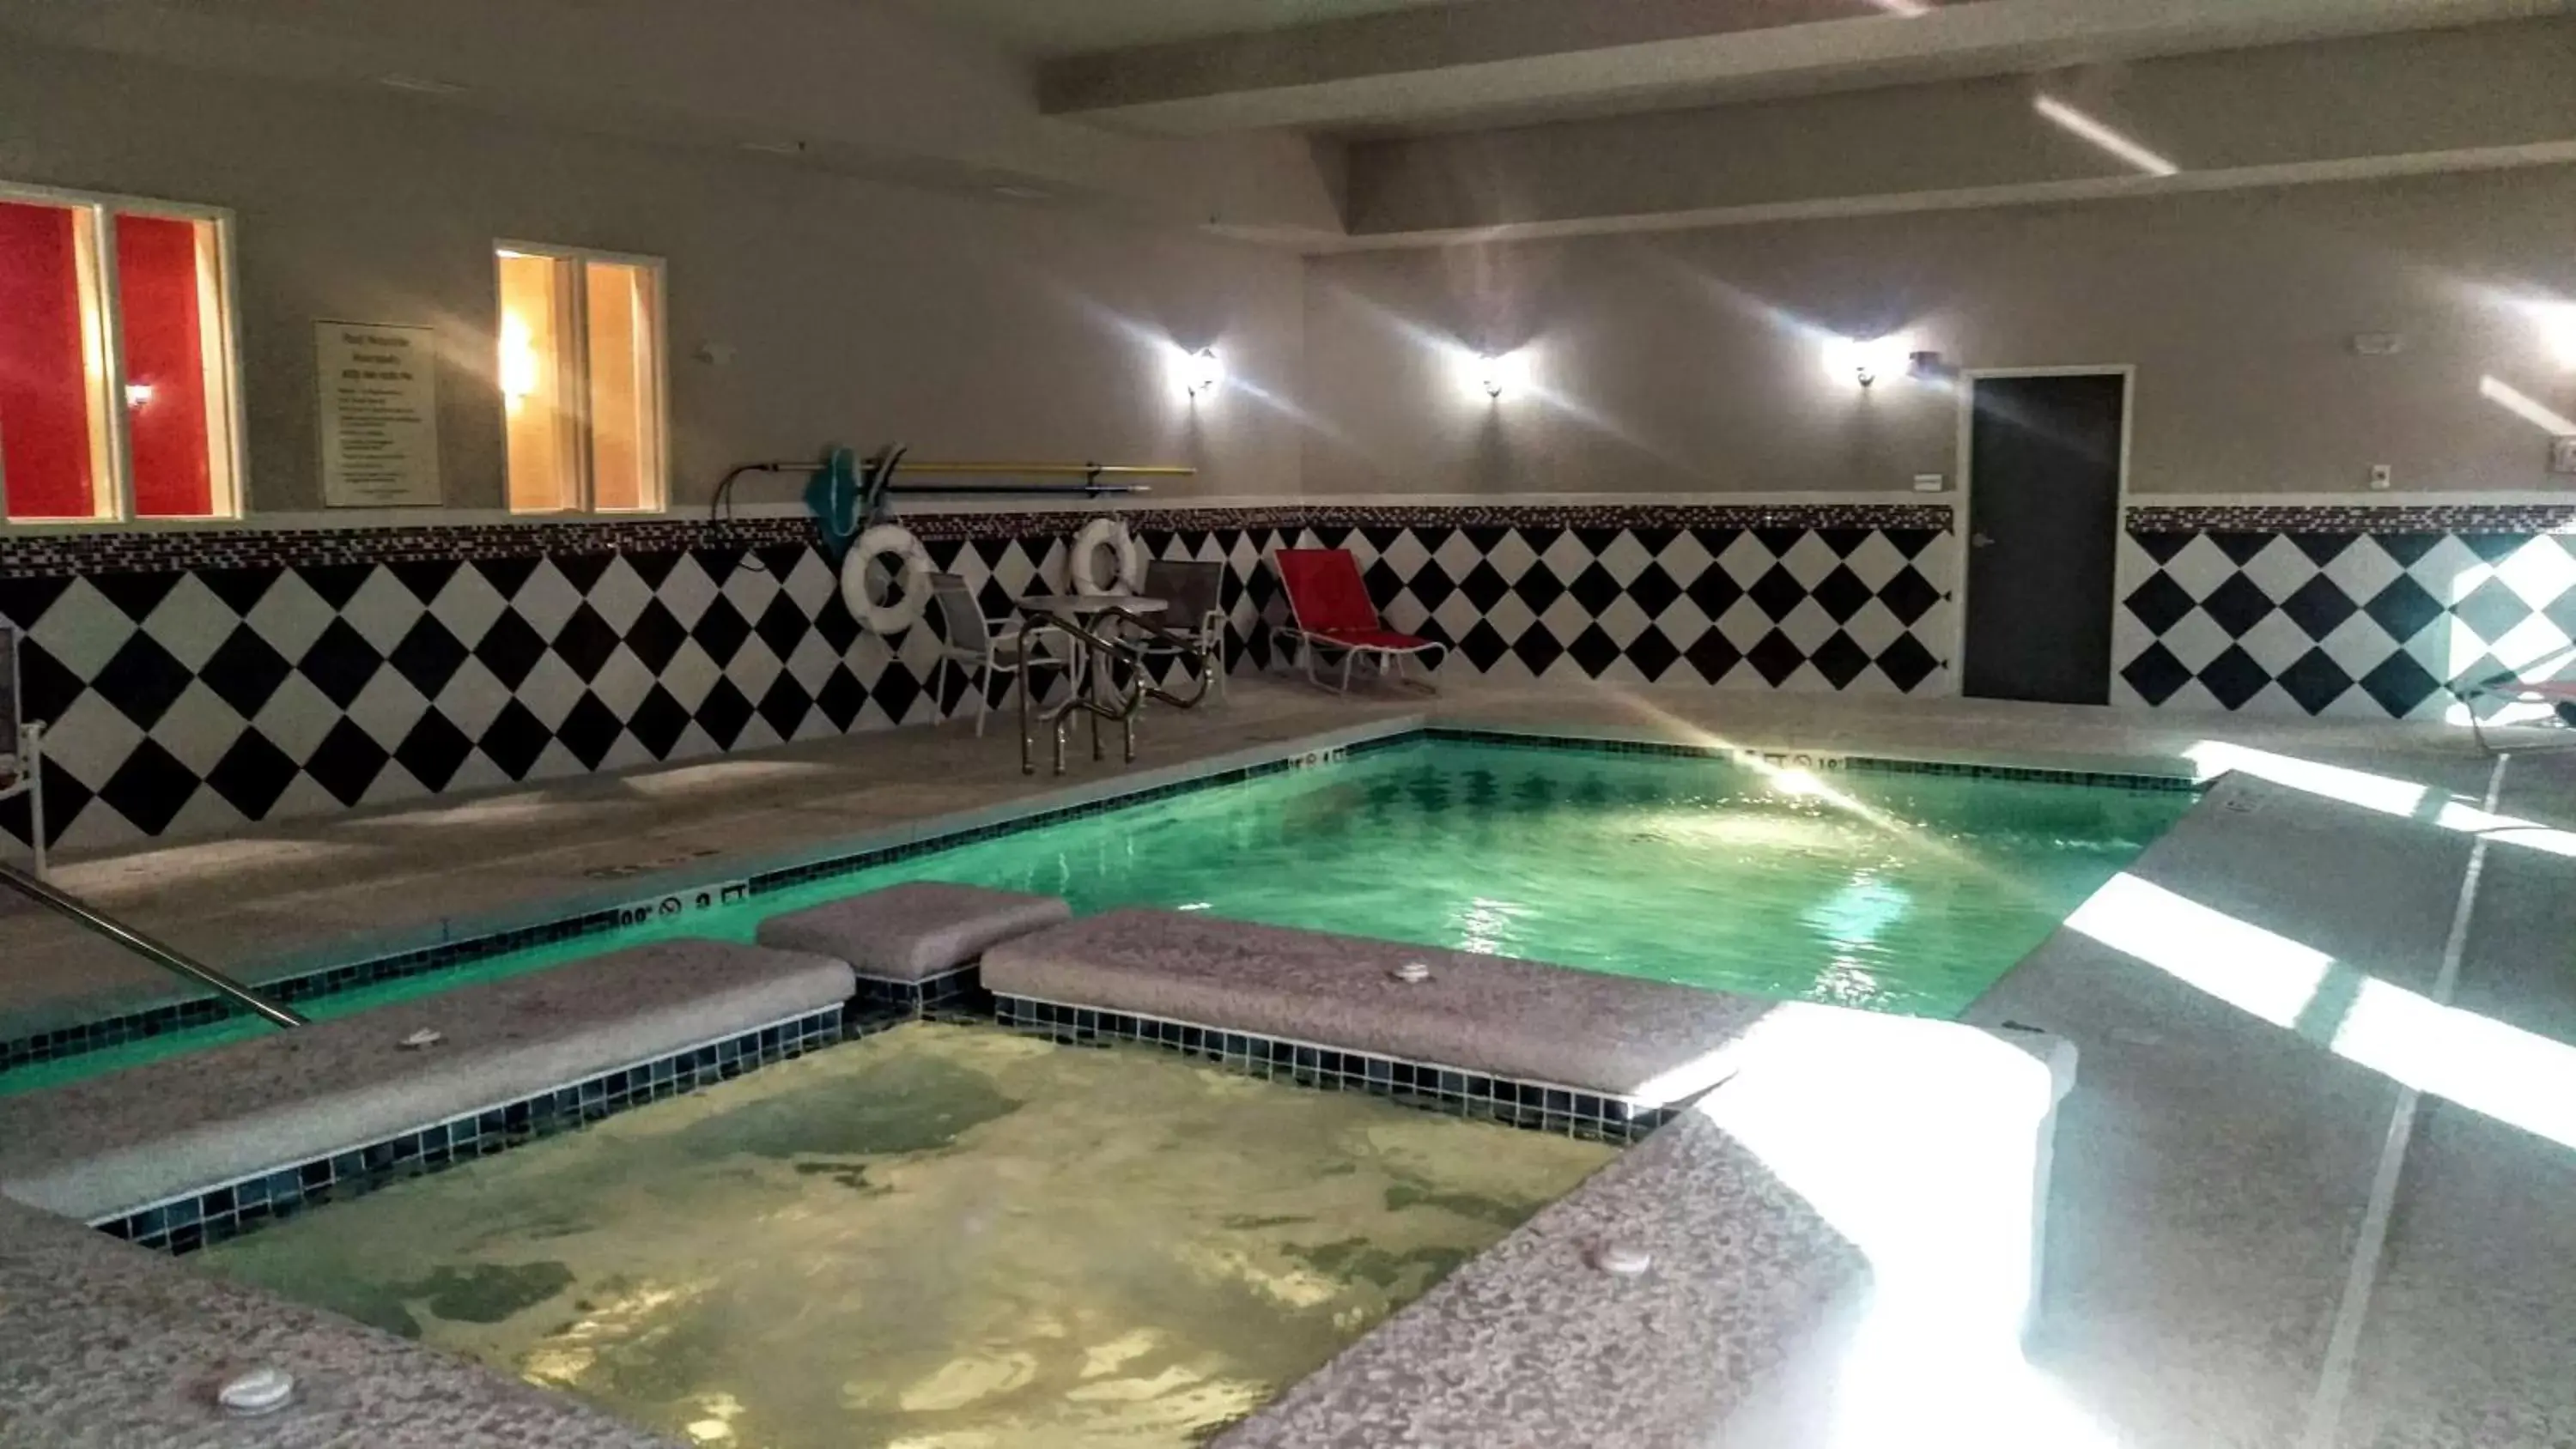 On site, Swimming Pool in Best Western Plus Laredo Inn & Suites